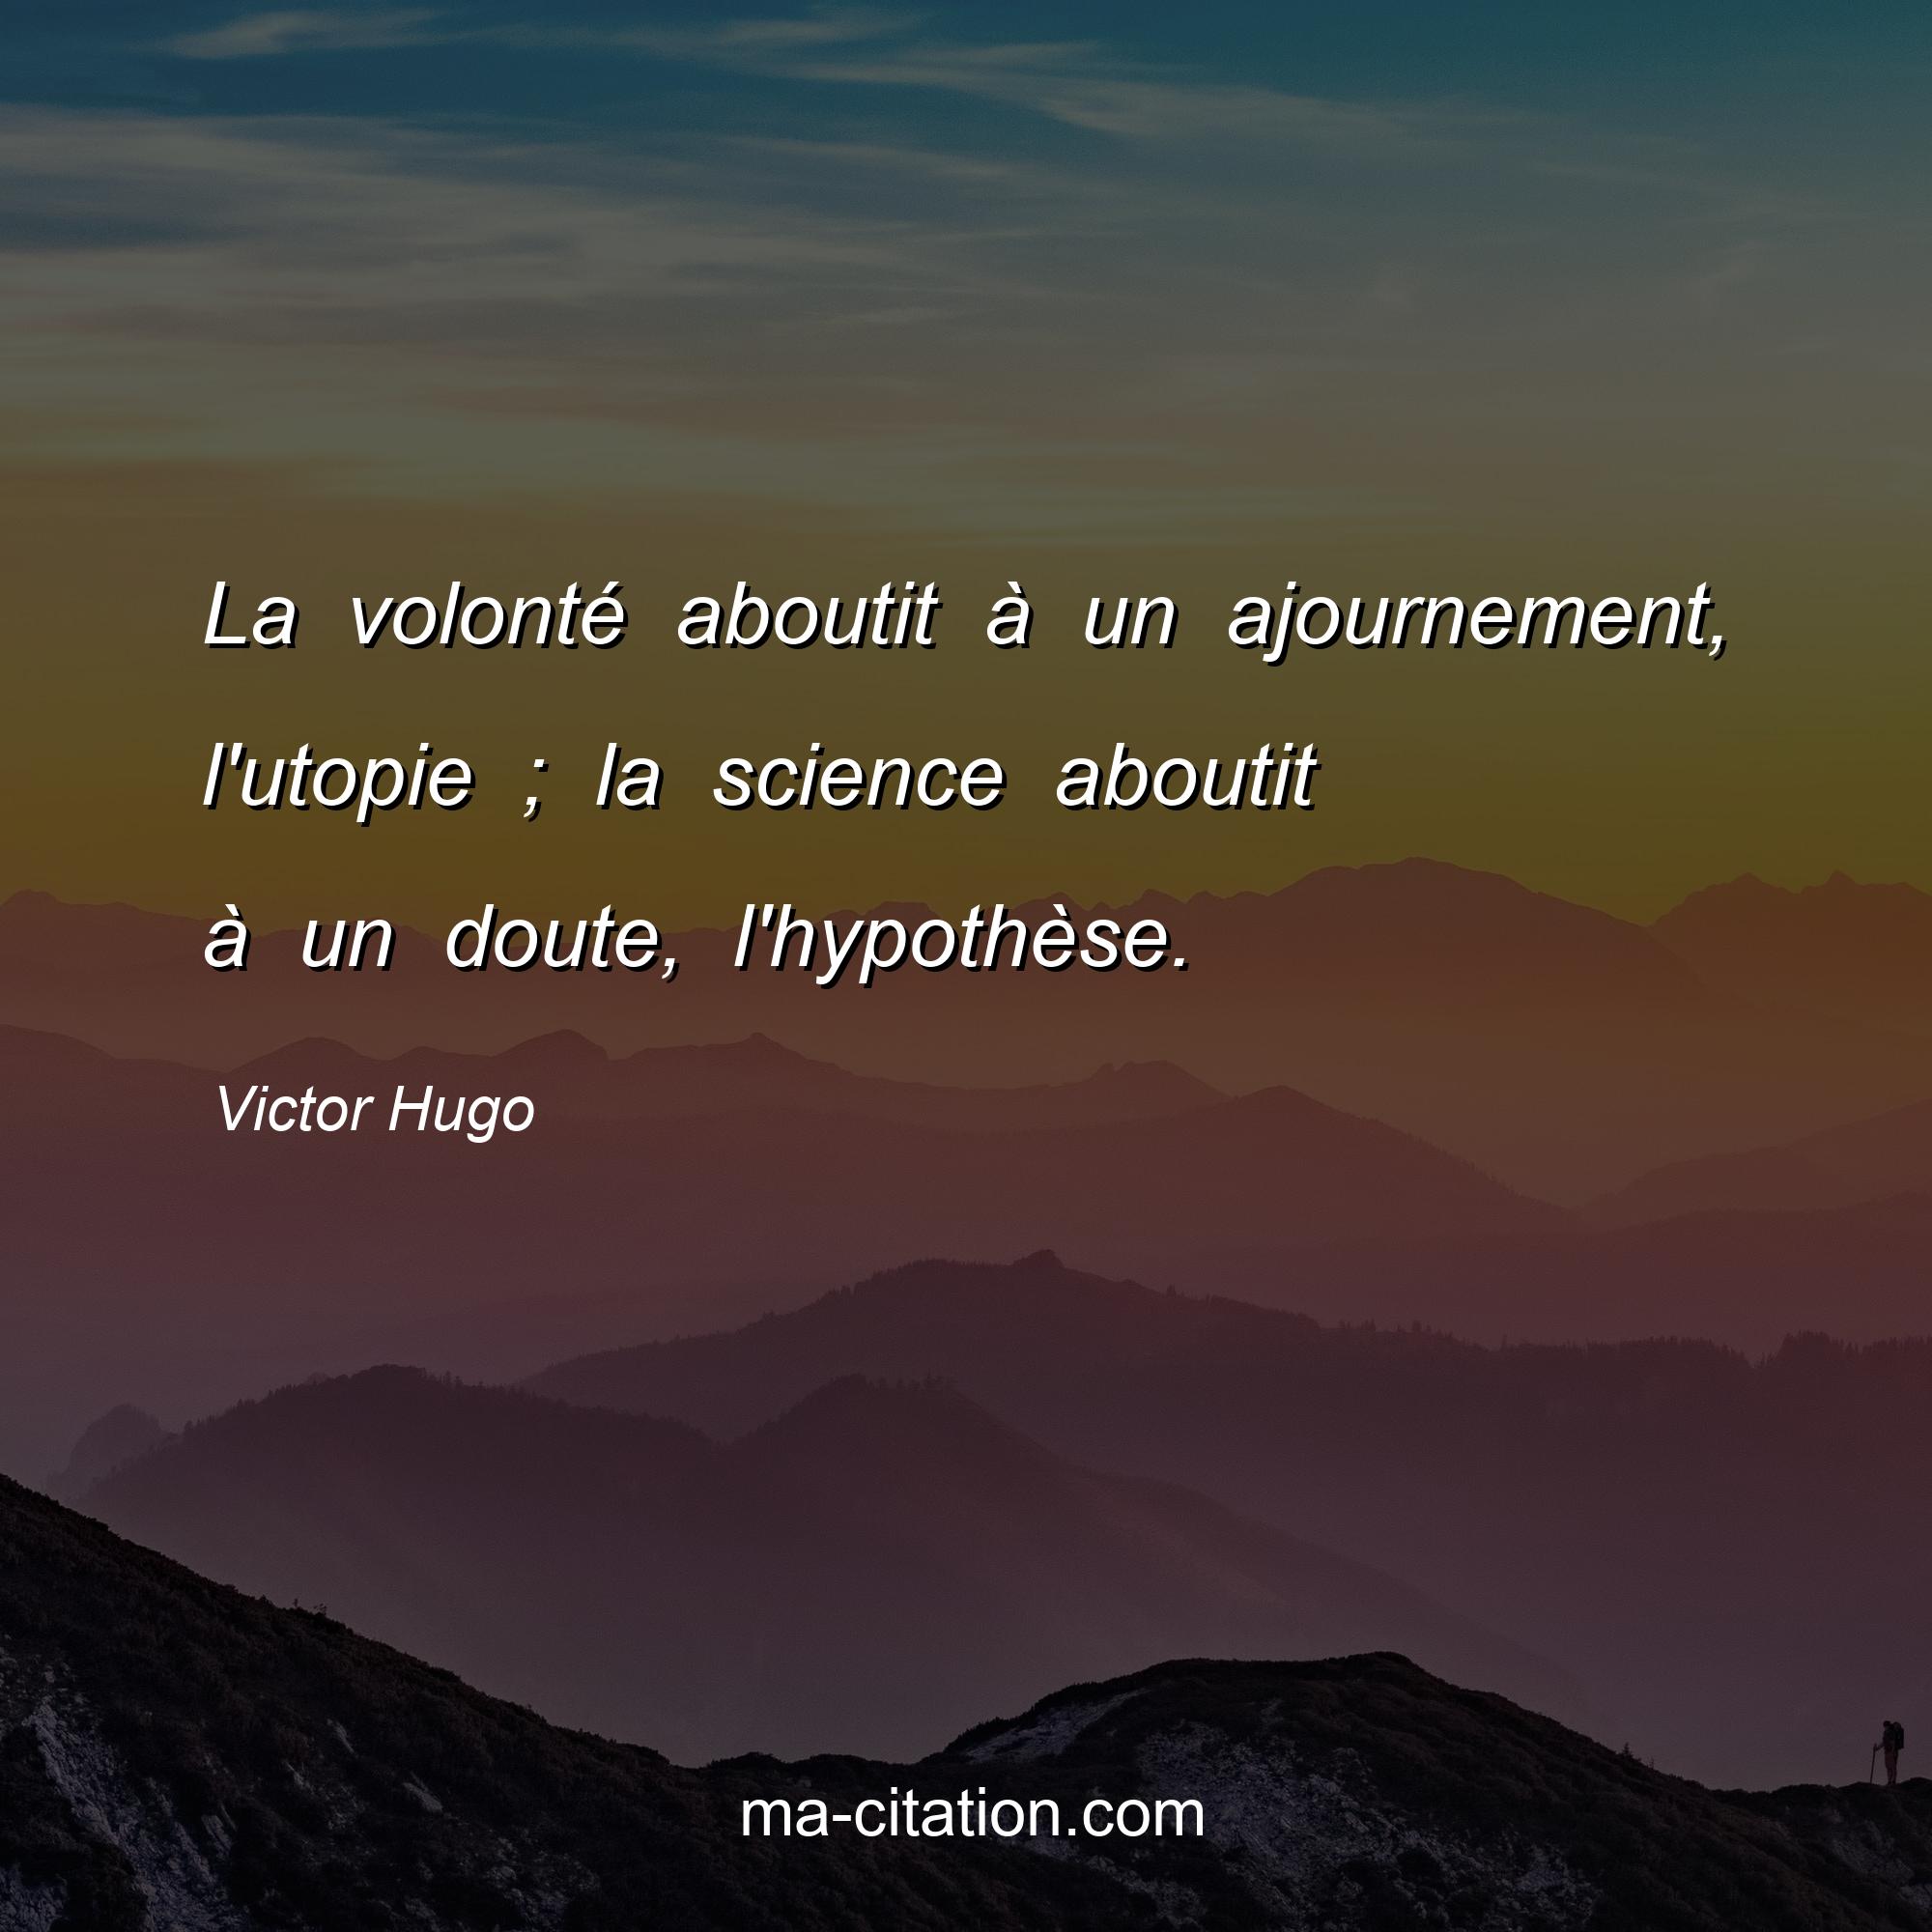 Victor Hugo : La volonté aboutit à un ajournement, l'utopie ; la science aboutit à un doute, l'hypothèse.